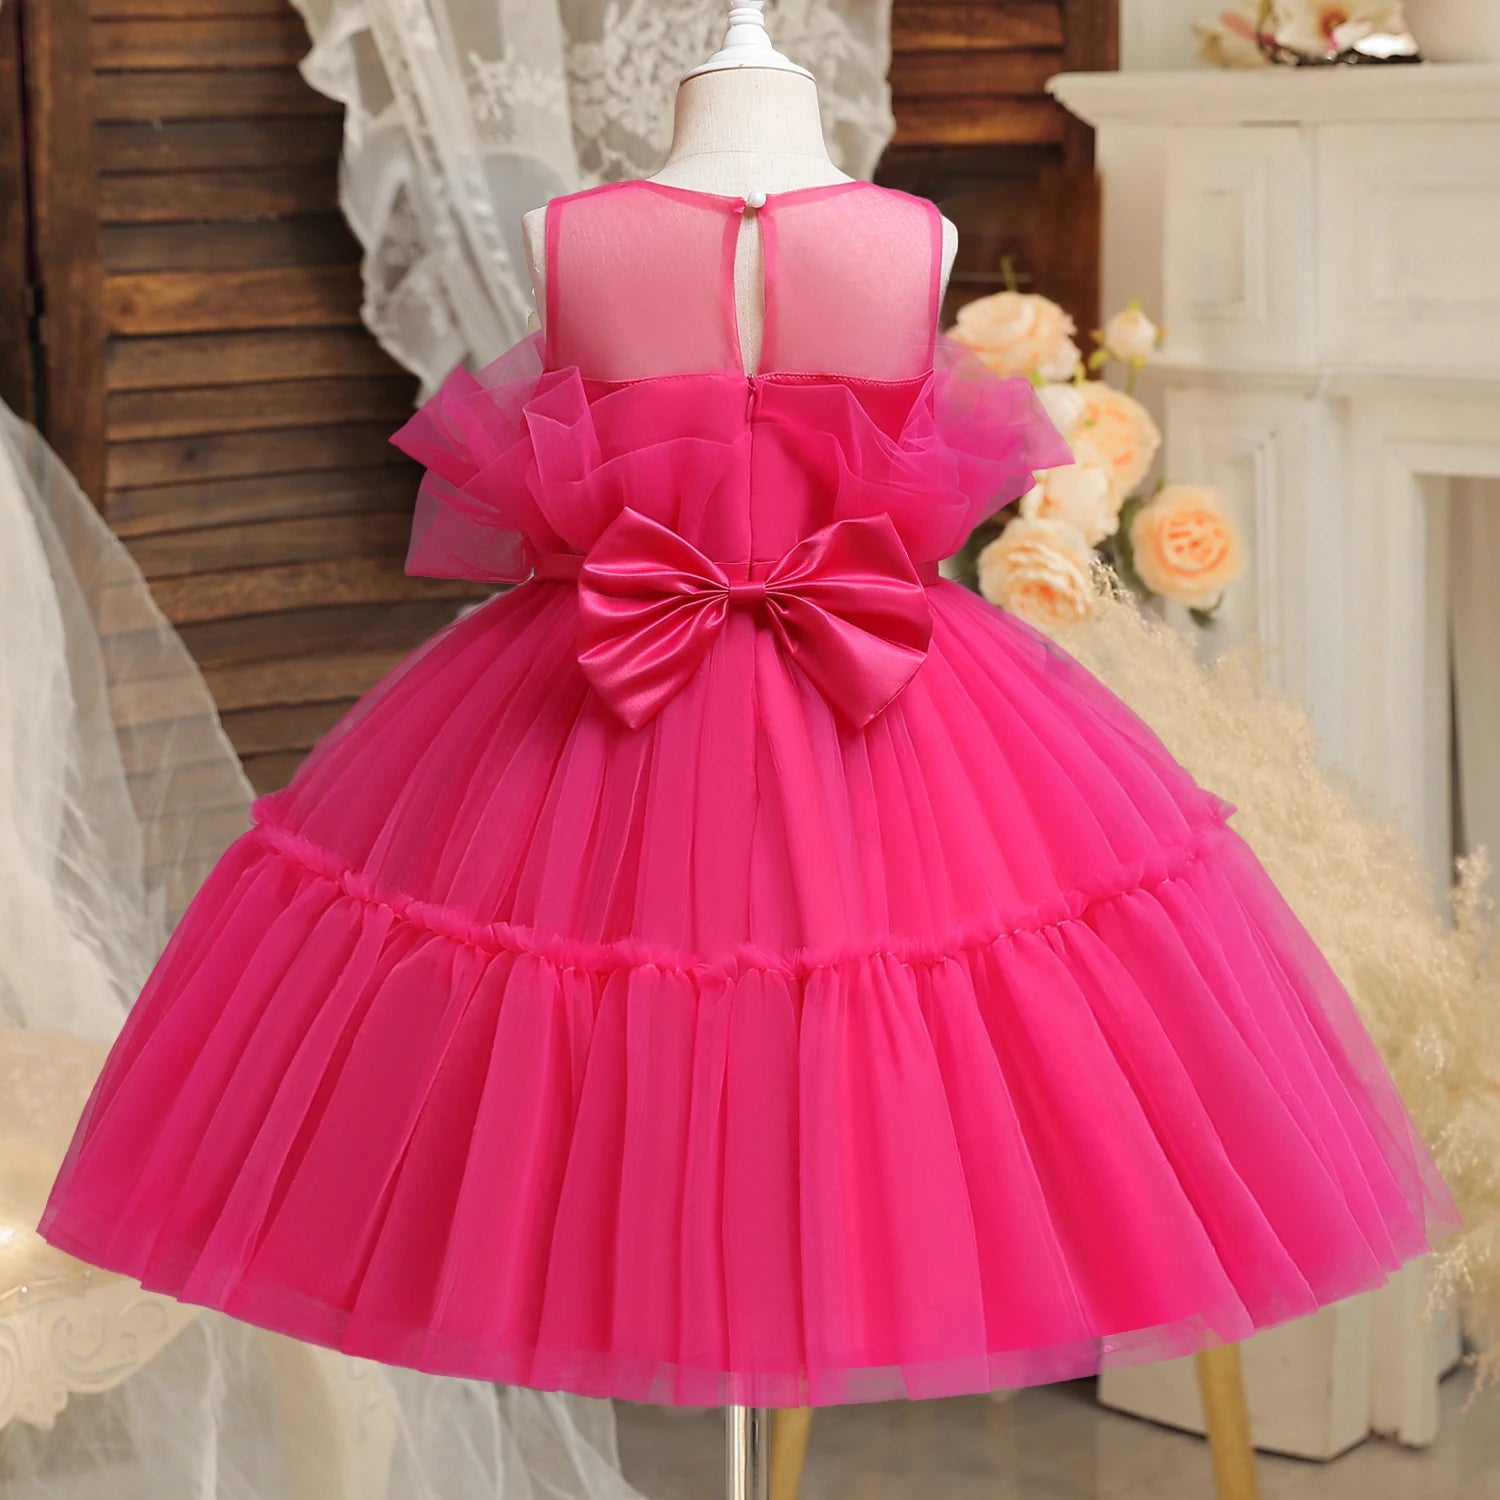 Prom Bowknot Tulle Flower Girl Knee Length Dresses rose red by Baby Minaj Cruz